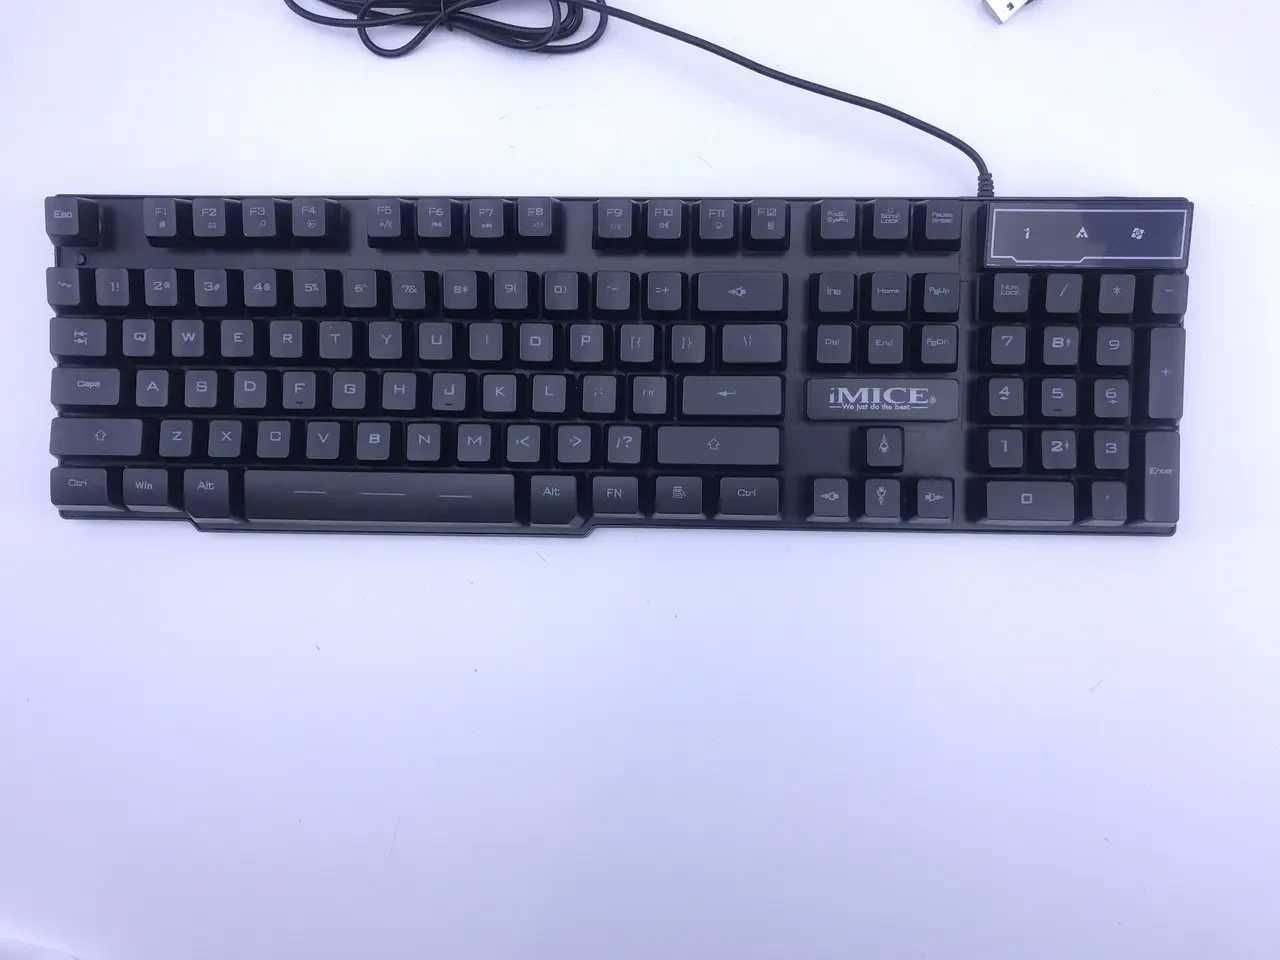 Набір клавіатура та мишка провідна з RGB підсвіткою iMICE KM-680